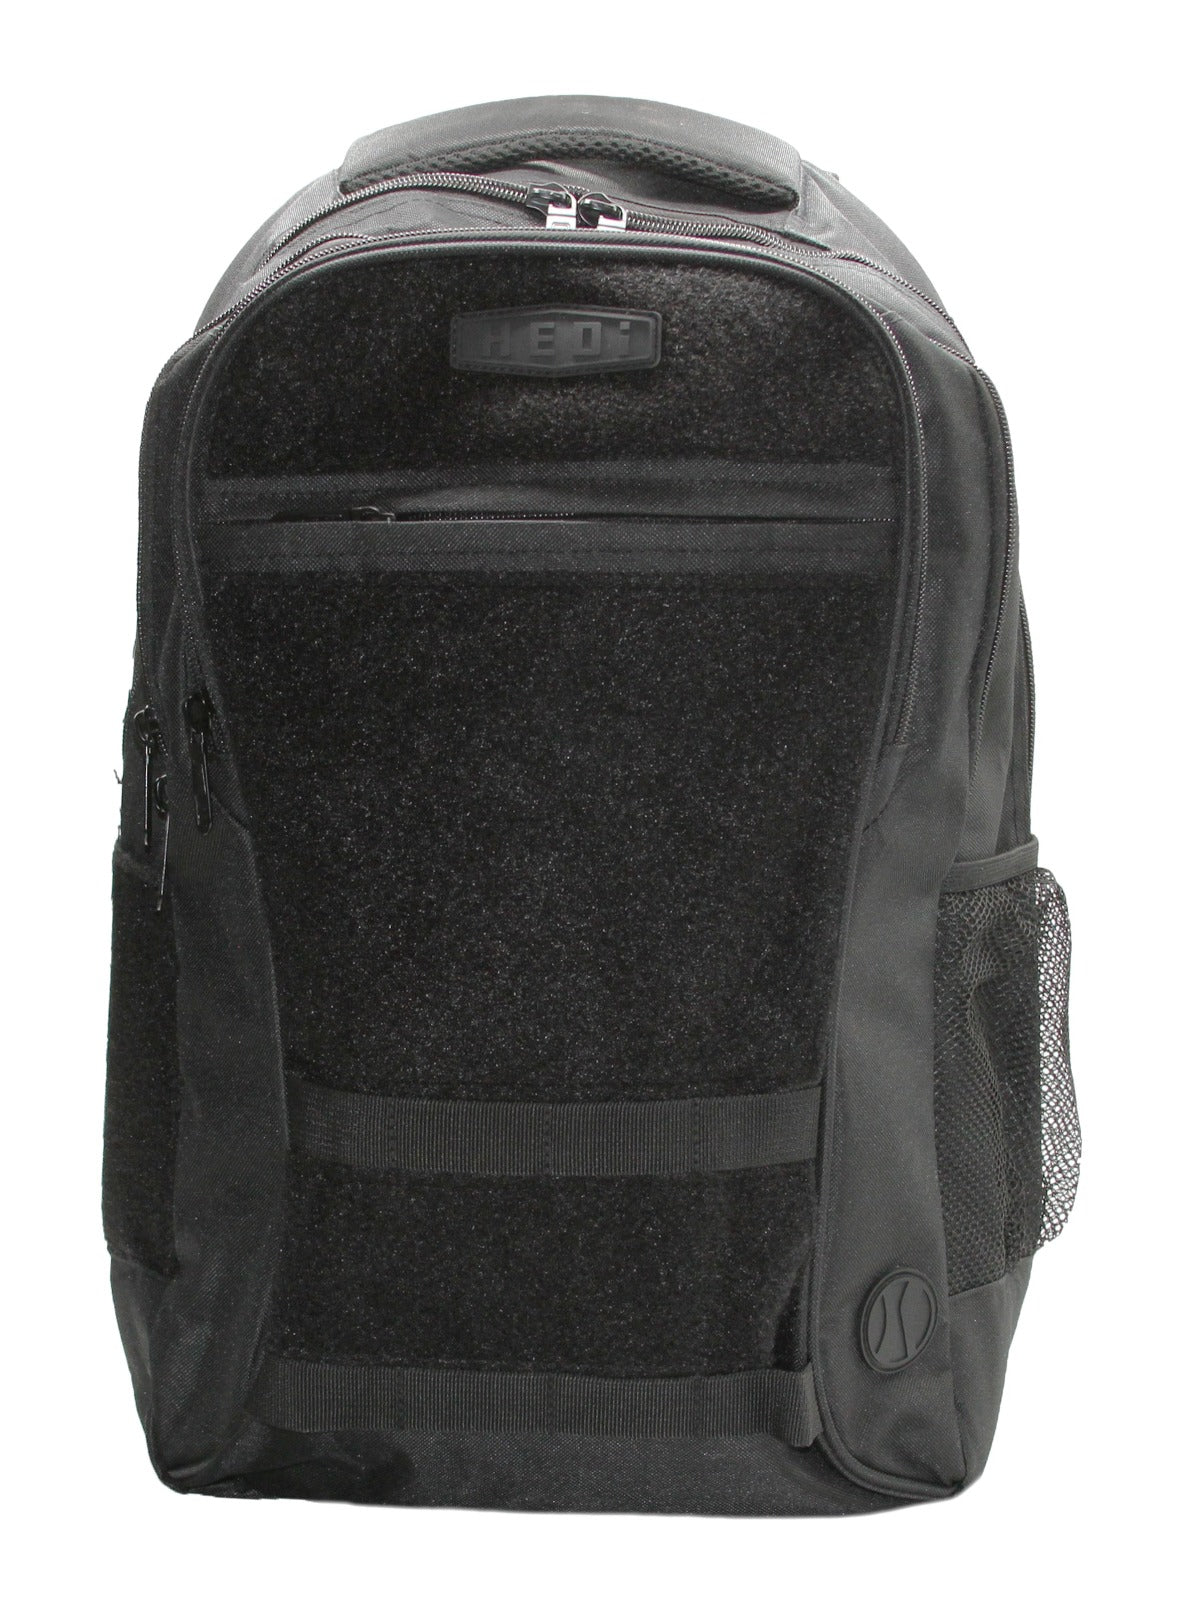 HEDi-PACK VOYAGER (Black) - Backpack